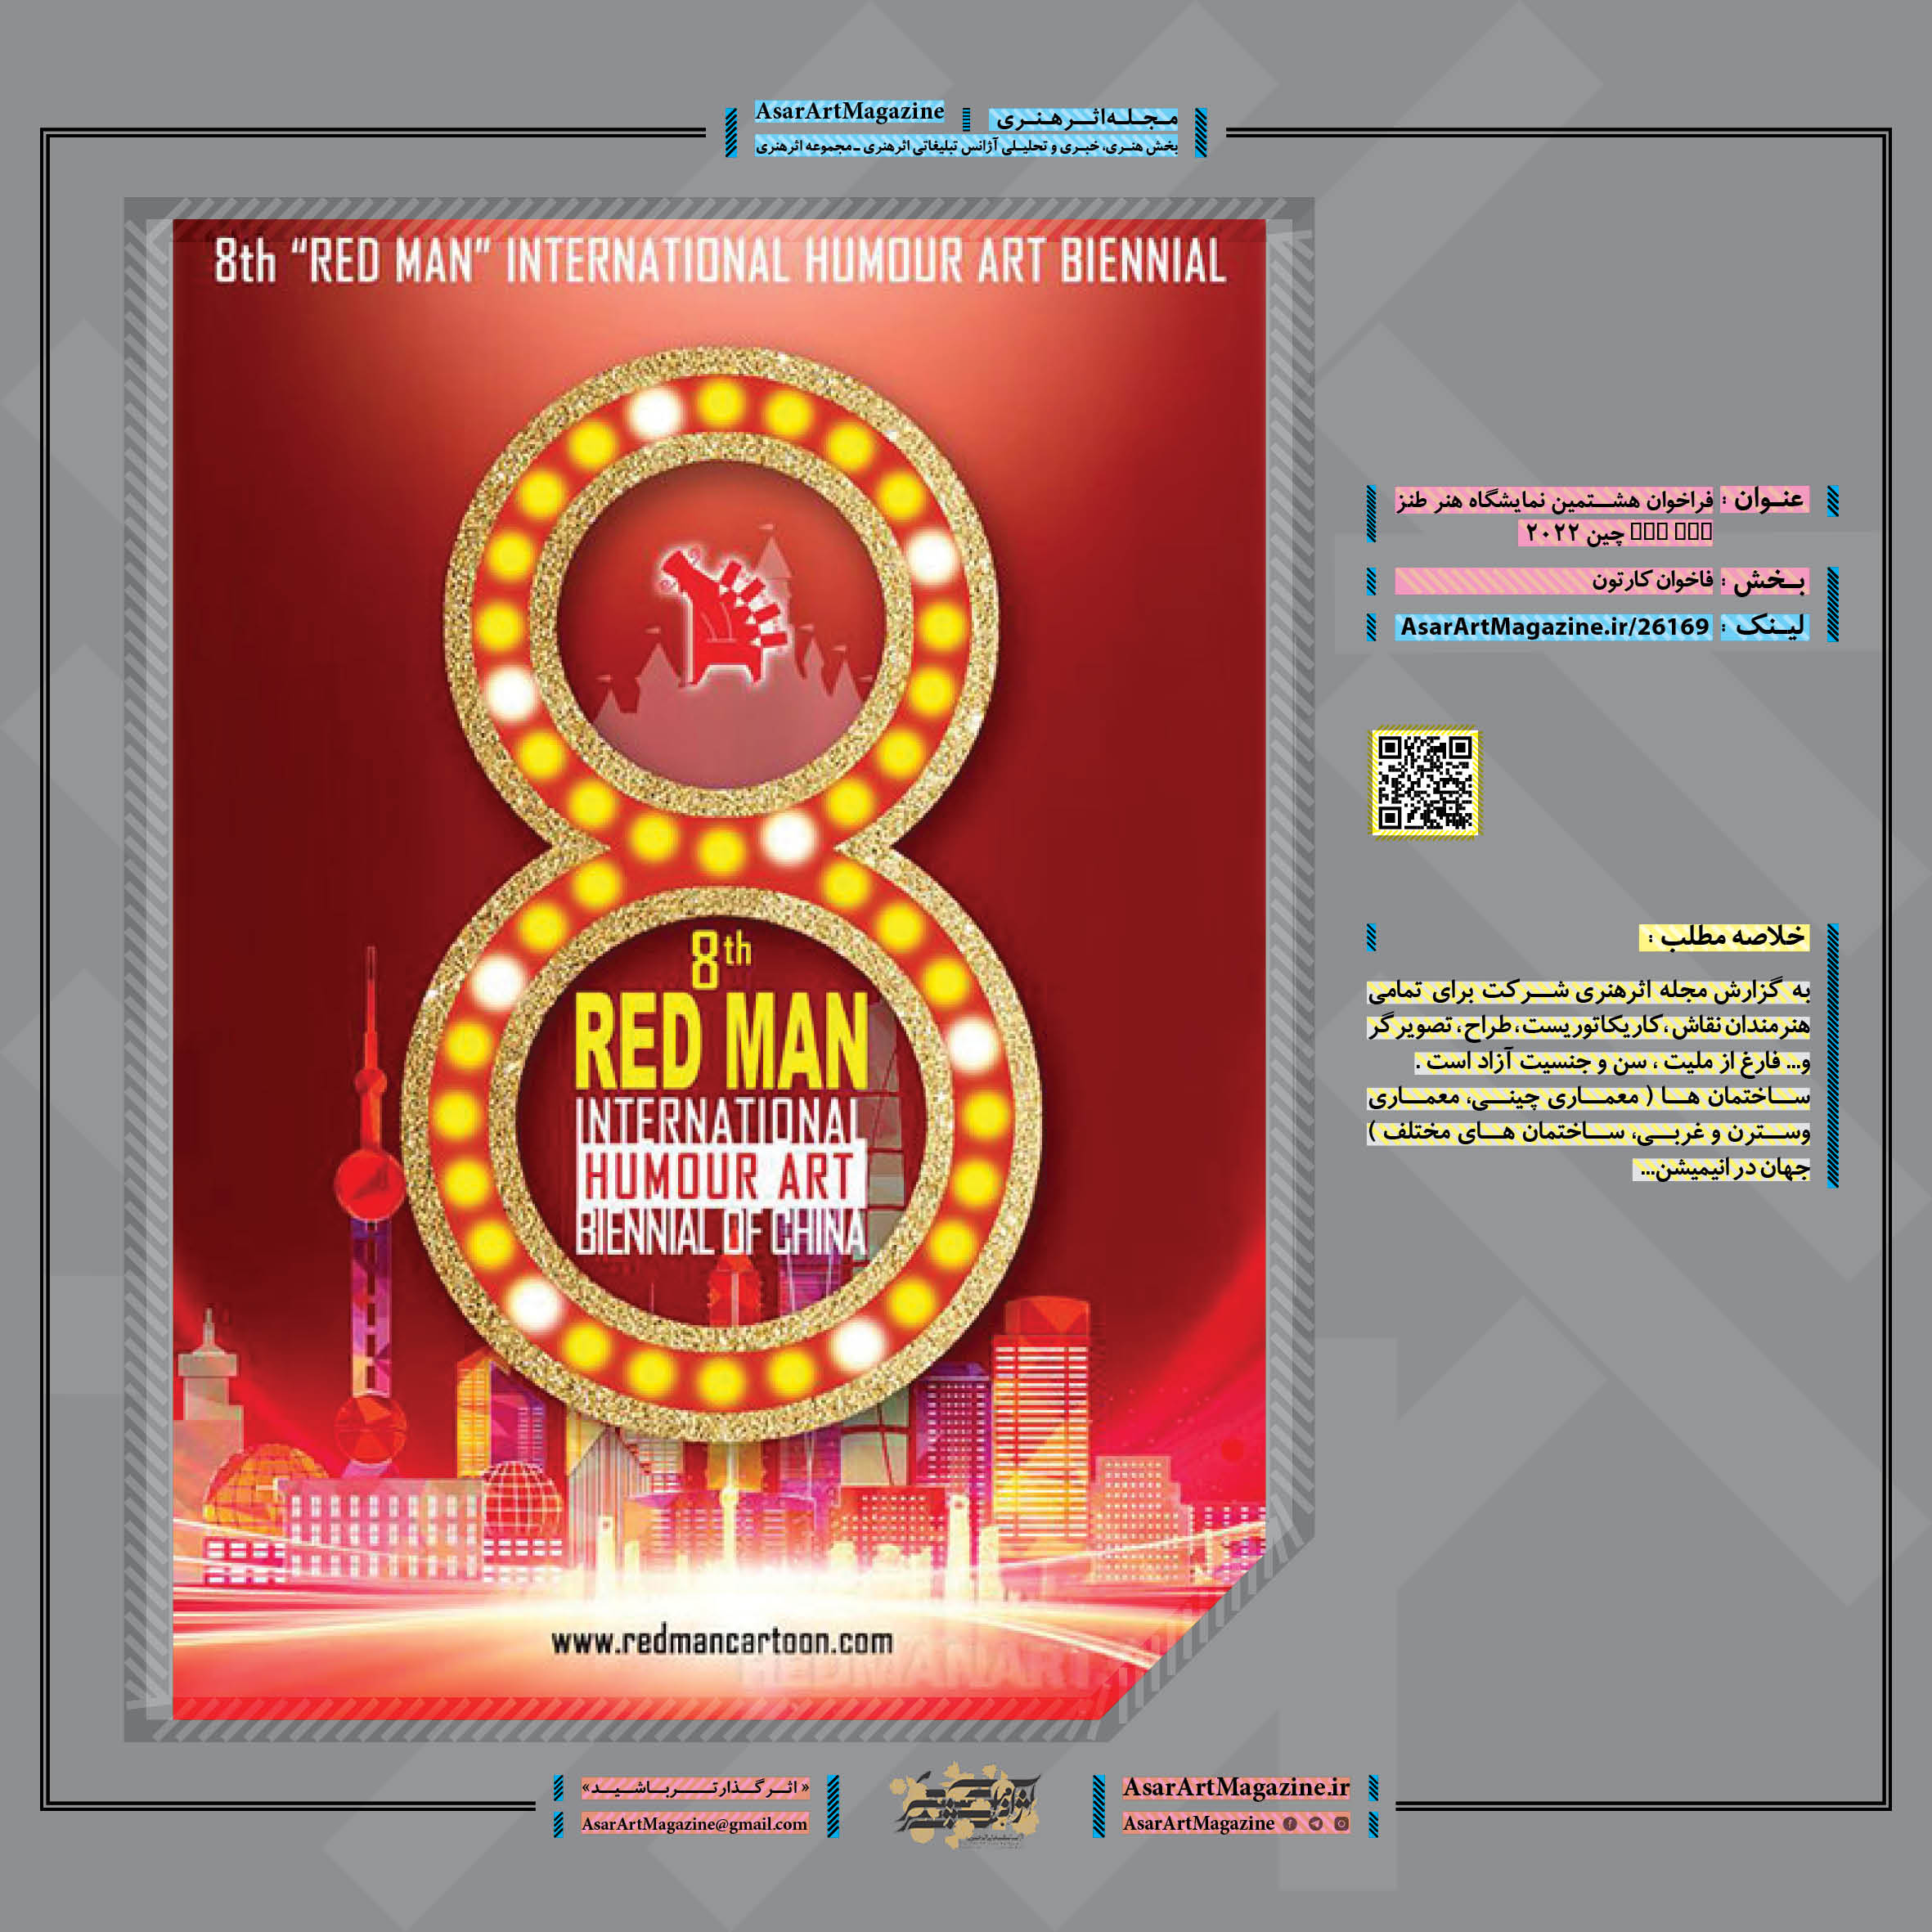 فراخوان هشتمین نمایشگاه هنر طنز RED MAN چین ۲۰۲۲  |  مجله اثرهنری، بخش هنری، خبری و تحلیلی مجموعه اثرهنری | مجله اثر هنری ـ «اثرگذارتر باشید»